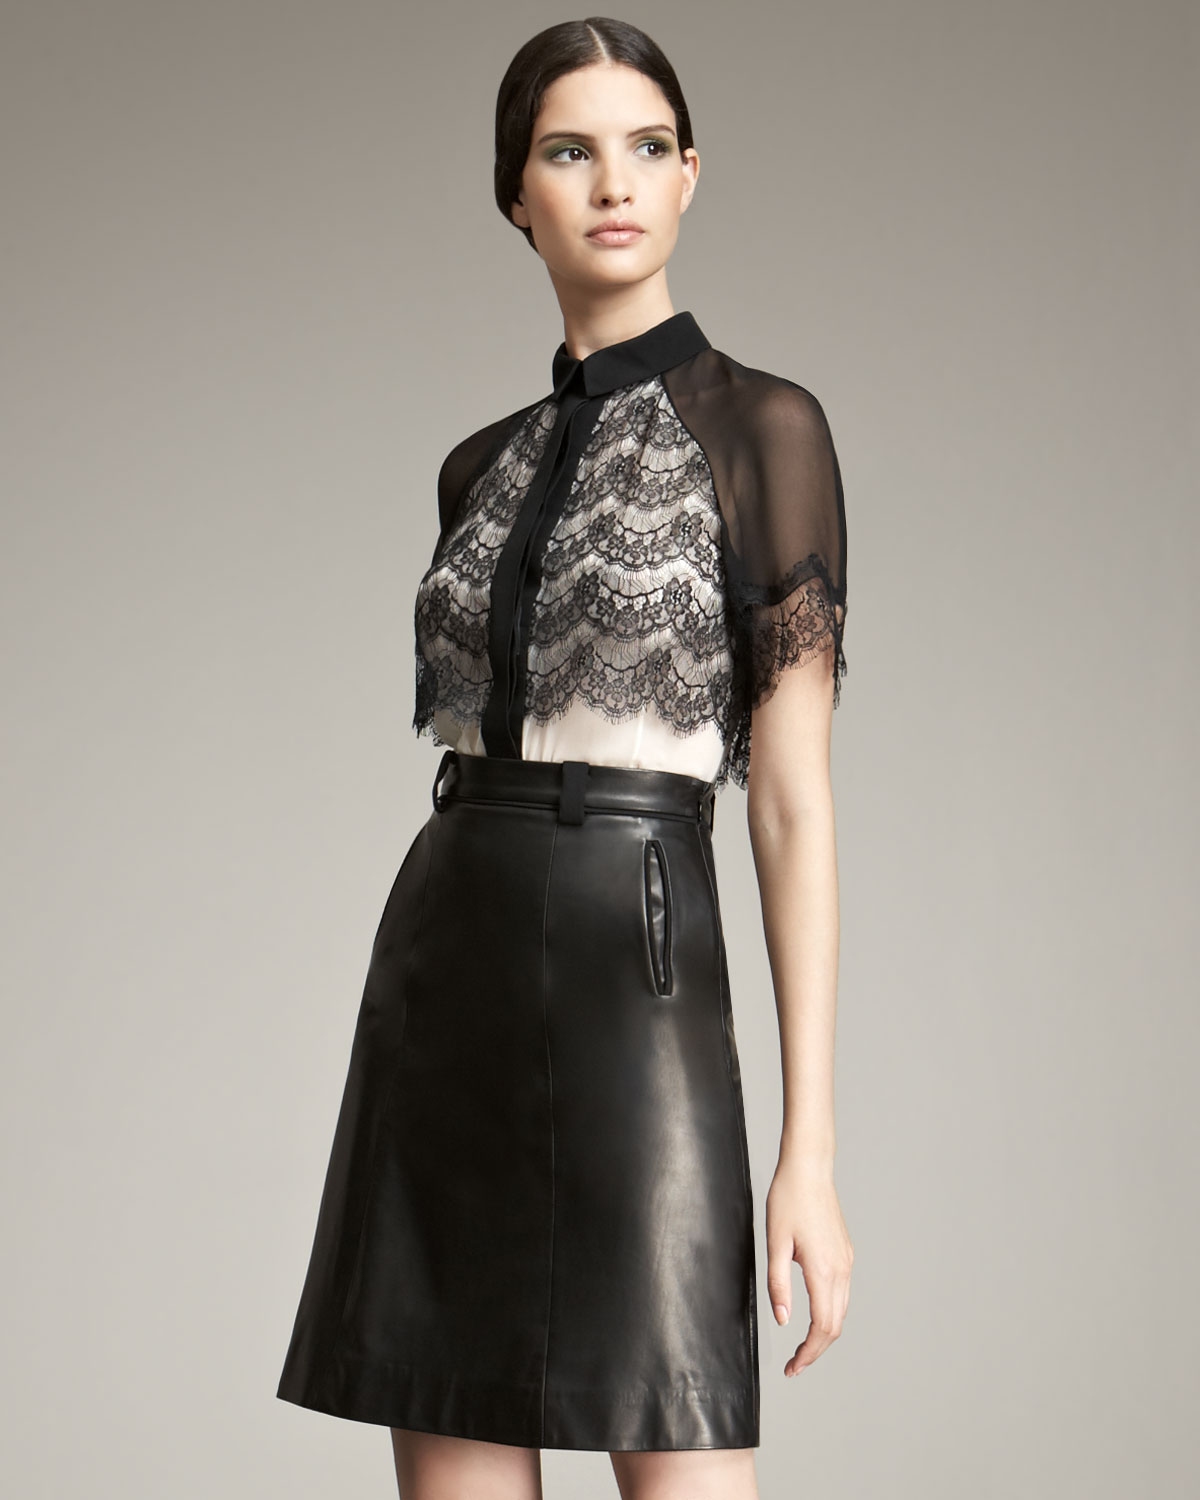 Brainy Mademoiselle: Leather Skirt